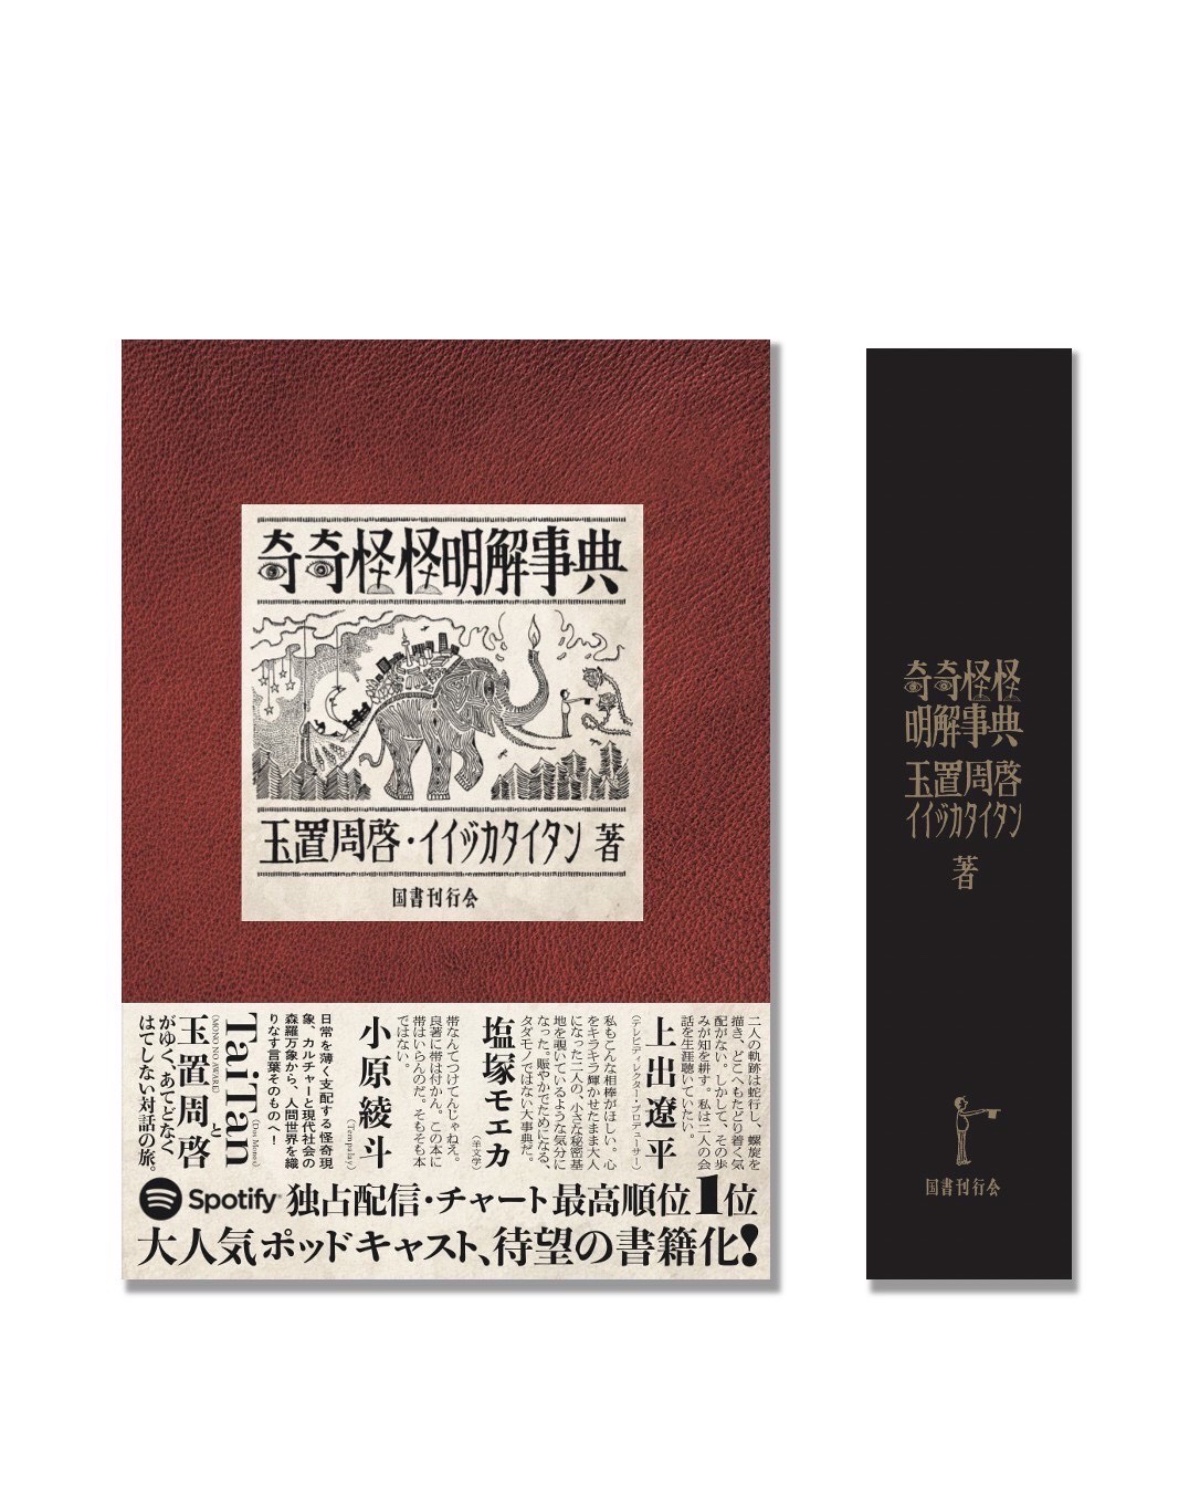 TaiTanと玉置周啓による「奇奇怪怪明解事典」が書籍化 - TOKION